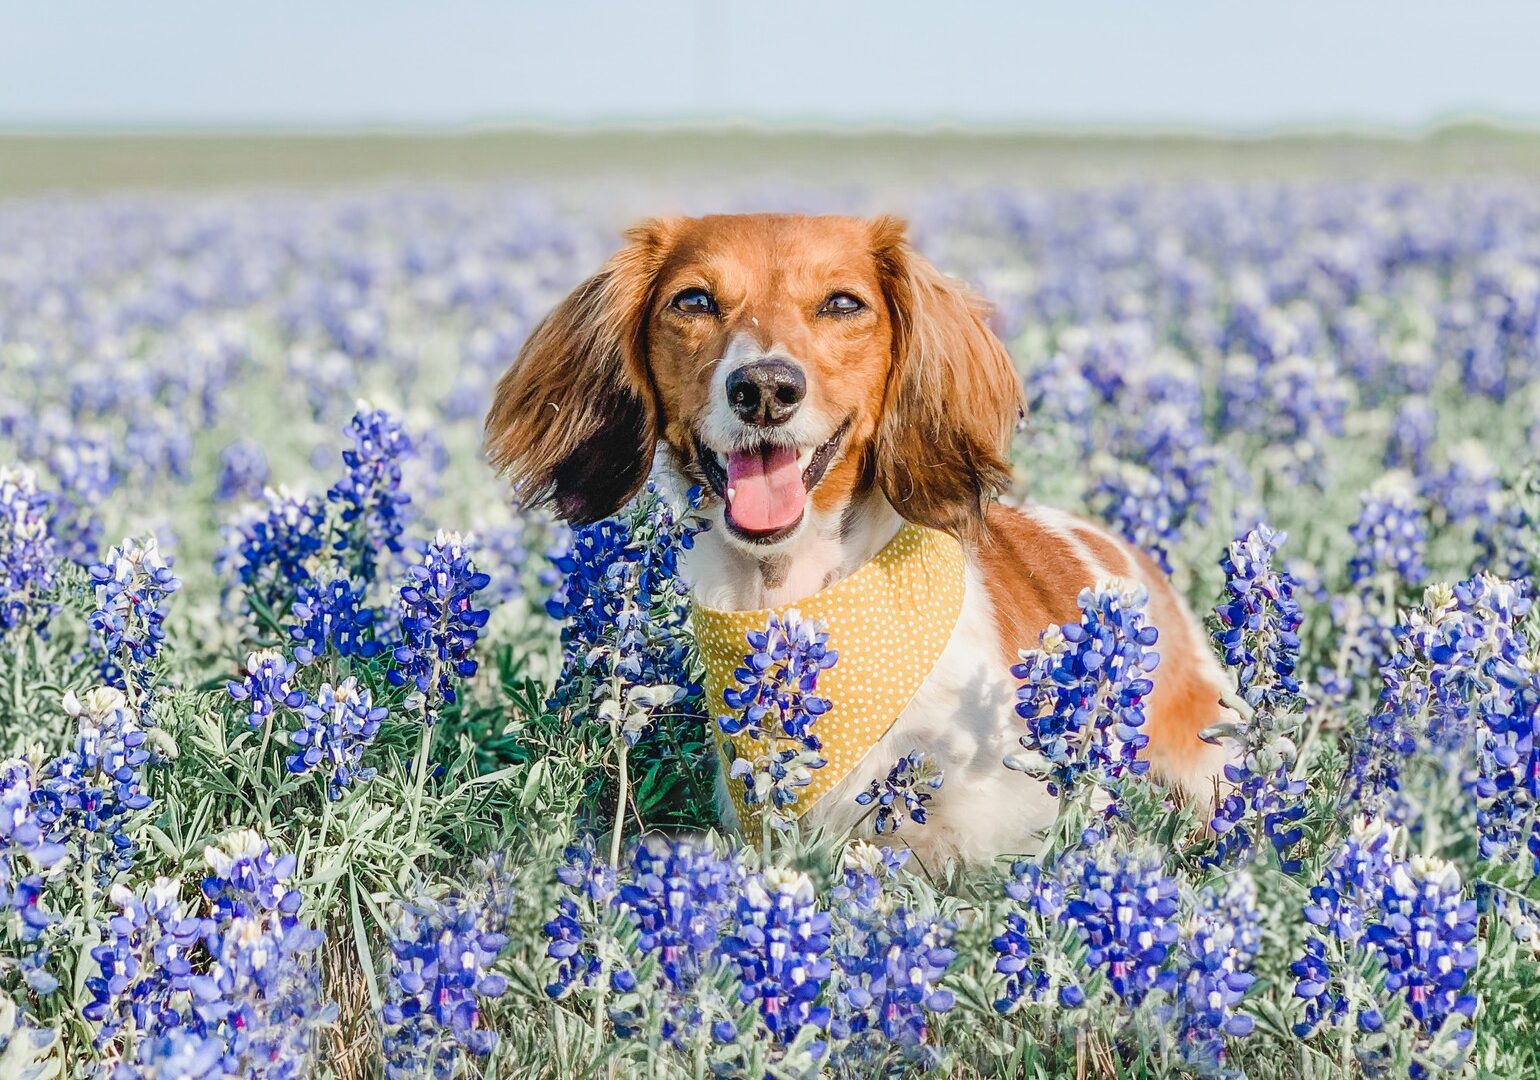 little dog in field of purple wildflowers